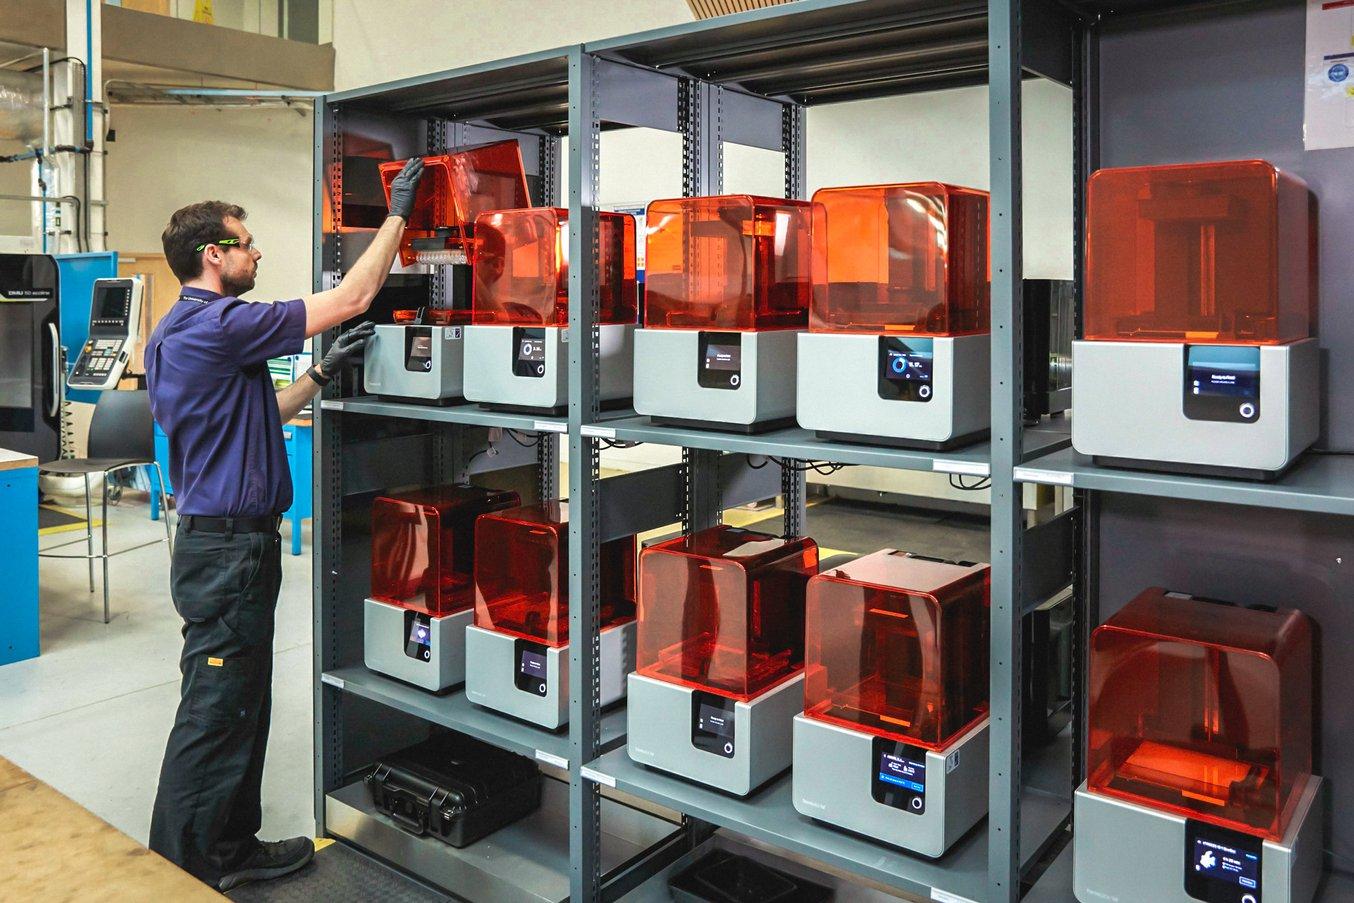 Die Design and Prototyping Group des Advanced Manufacturing Research Centre (AMRC) der University of Sheffield betreibt eine additive Fertigungsstation mit einer Flotte von 12 Form 2 Stereolithografie (SLA) 3D-Druckern.